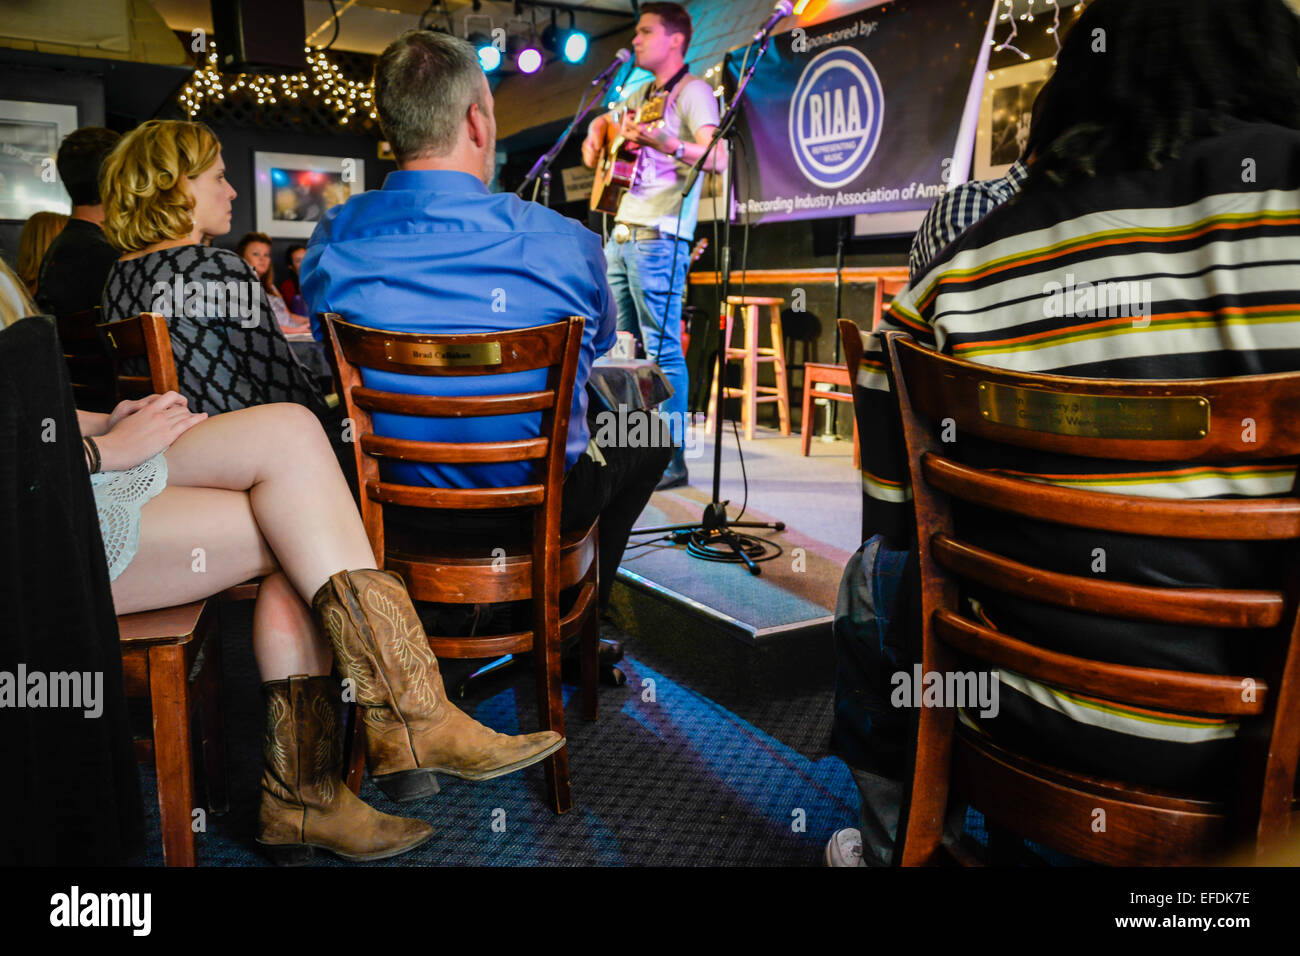 Songwriter tritt mit dem kurzen Rock der Frau und den Cowboy-Stiefeln im legendären Blue Bird Café in Nashville, TN, USA, auf der Bühne auf Stockfoto